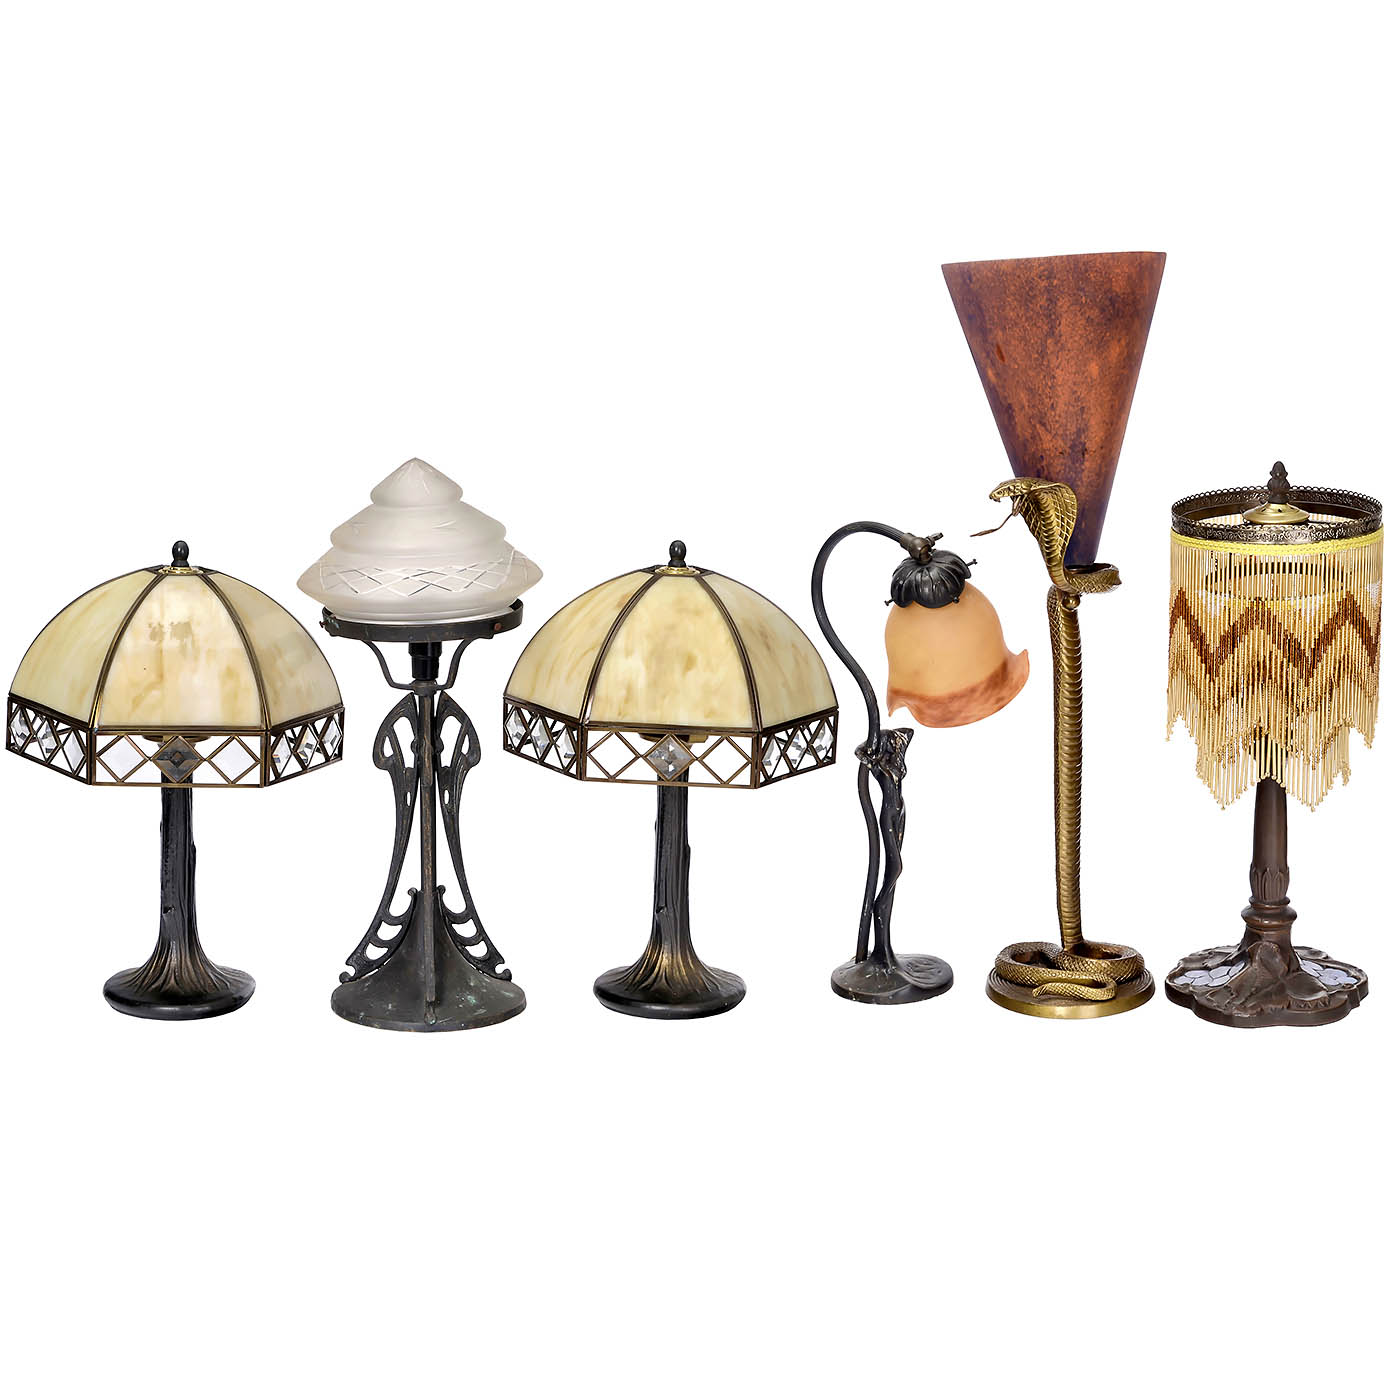 6 Art-Nouveau and Art-Deco-Style Table Lamps, c. 1980